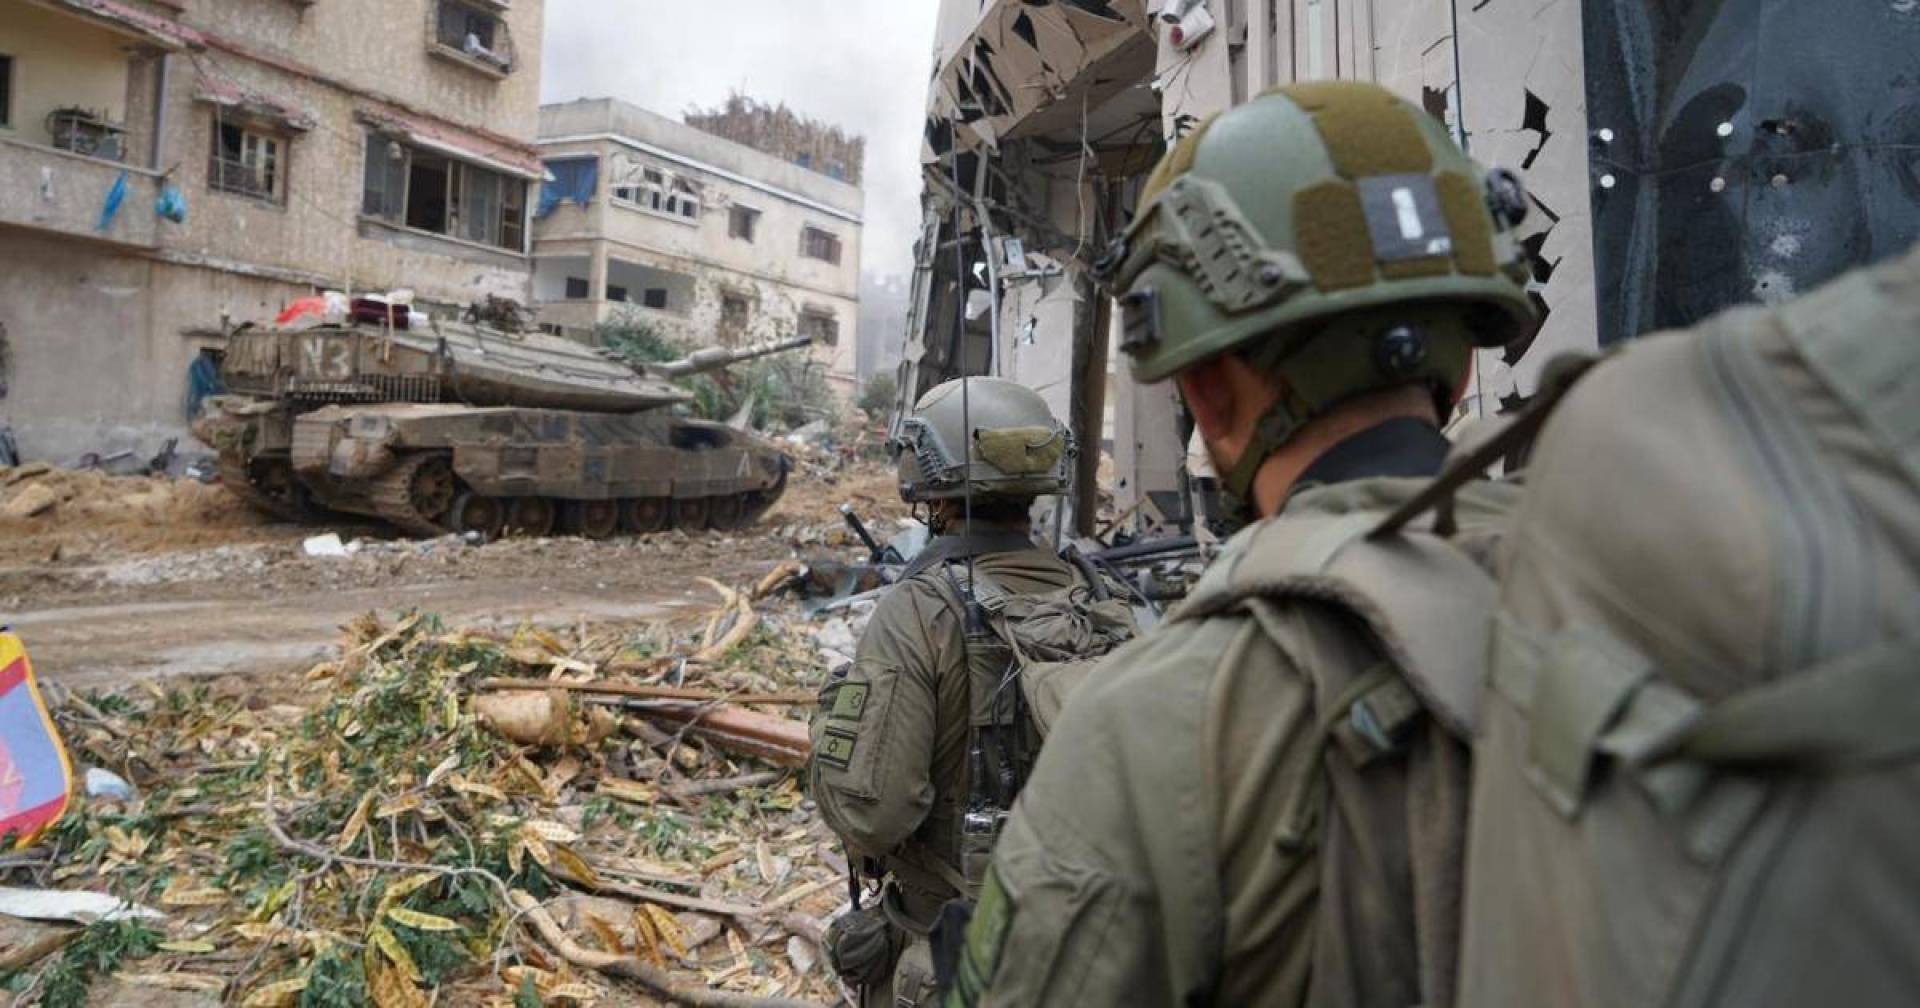 جيش الاحتلال الإسرائيلي يطالب سكان أحياء بالإخلاء والتوجه جنوب غزة